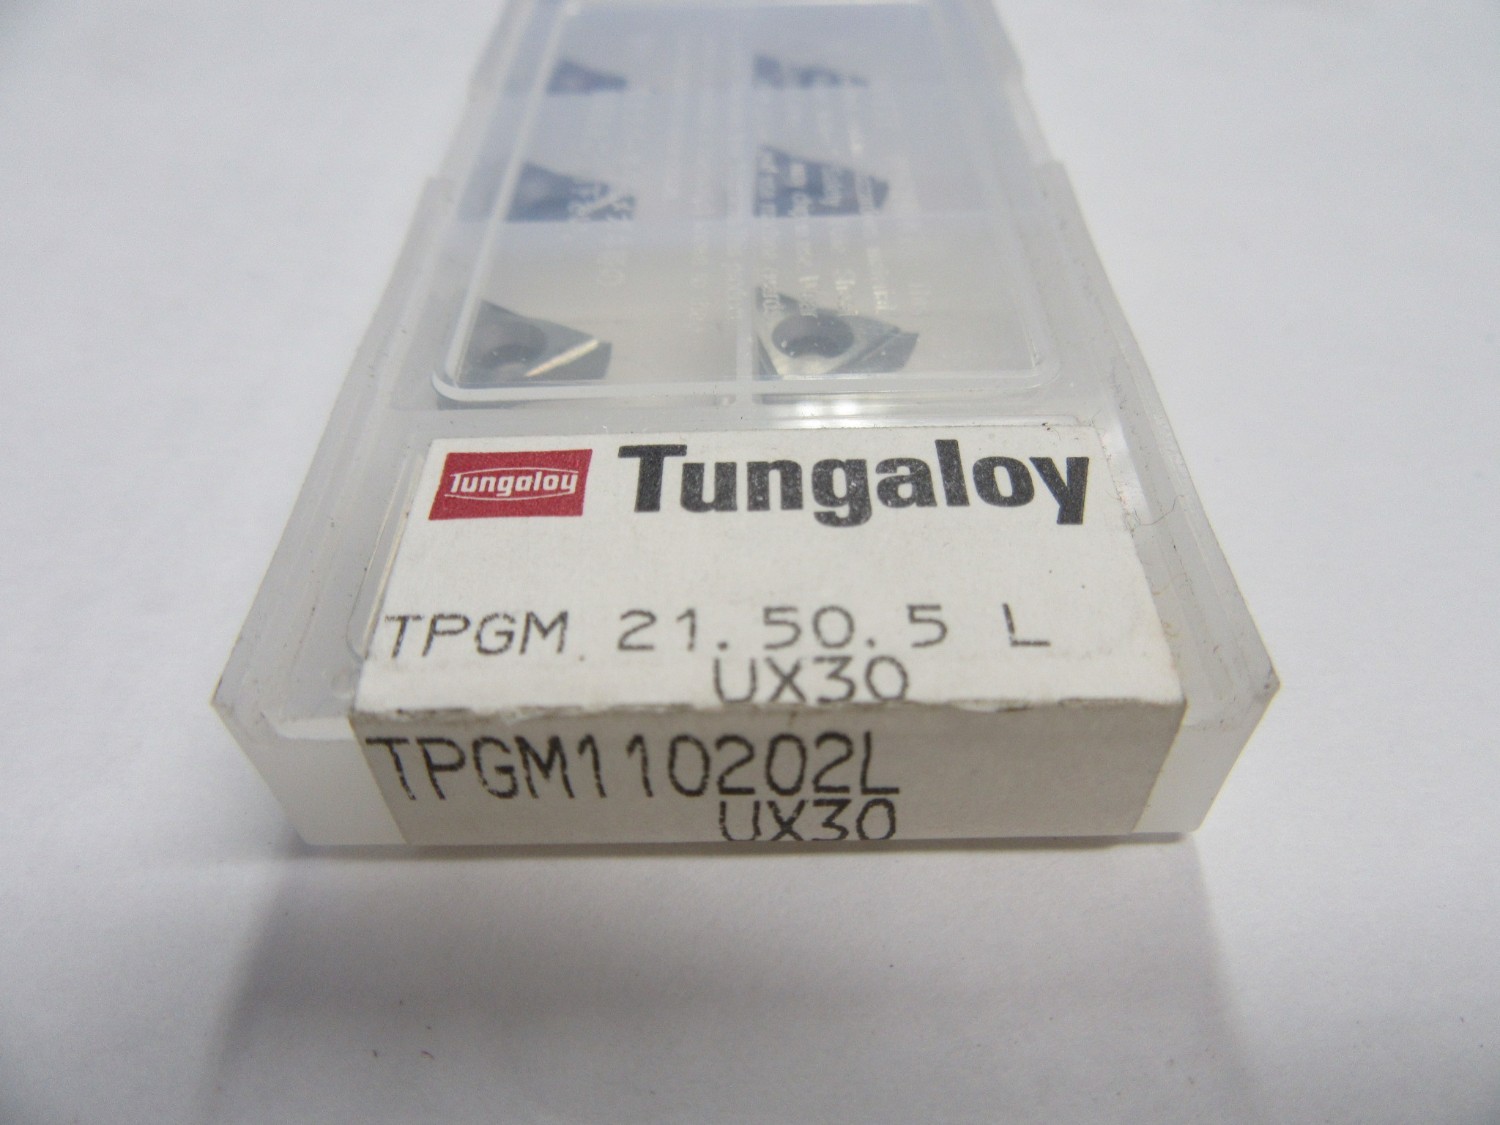 中古Other チップ(TPGM110202L-UX30)  Tungaloy 